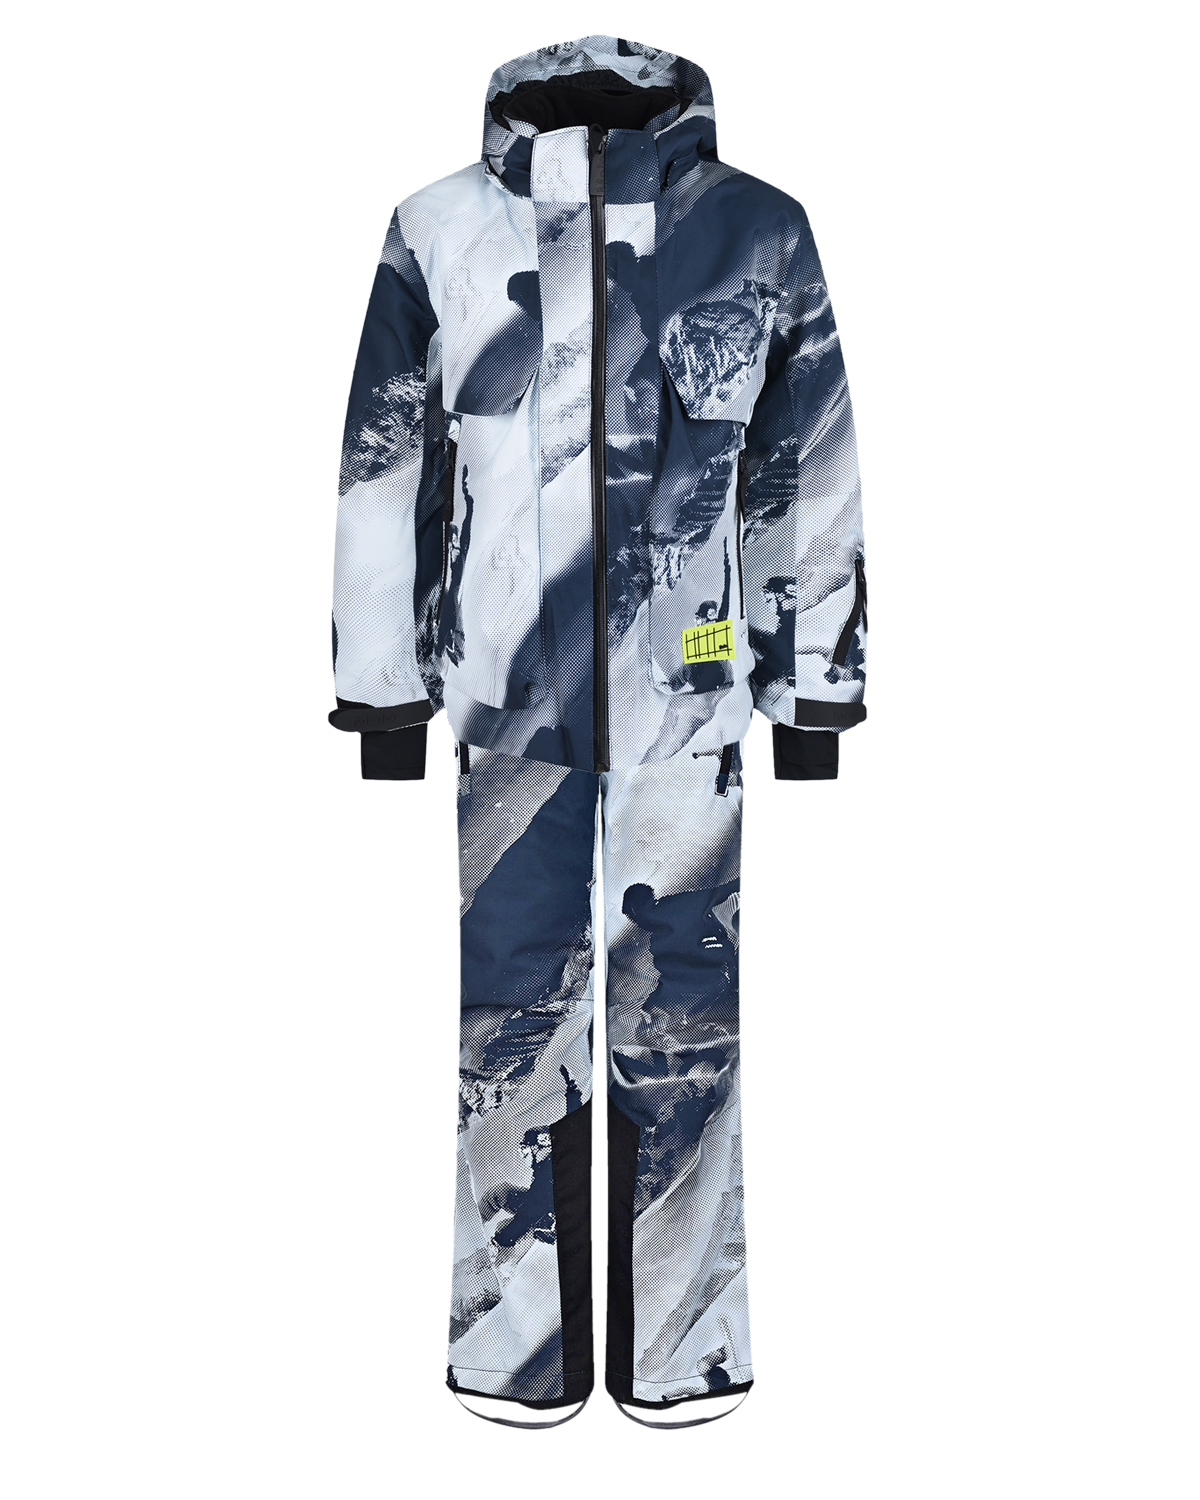 Комплект с принтом "лыжники" (куртка, брюки, подтяжки) Molo детский, размер 140, цвет нет цвета Комплект с принтом "лыжники" (куртка, брюки, подтяжки) Molo детский - фото 1